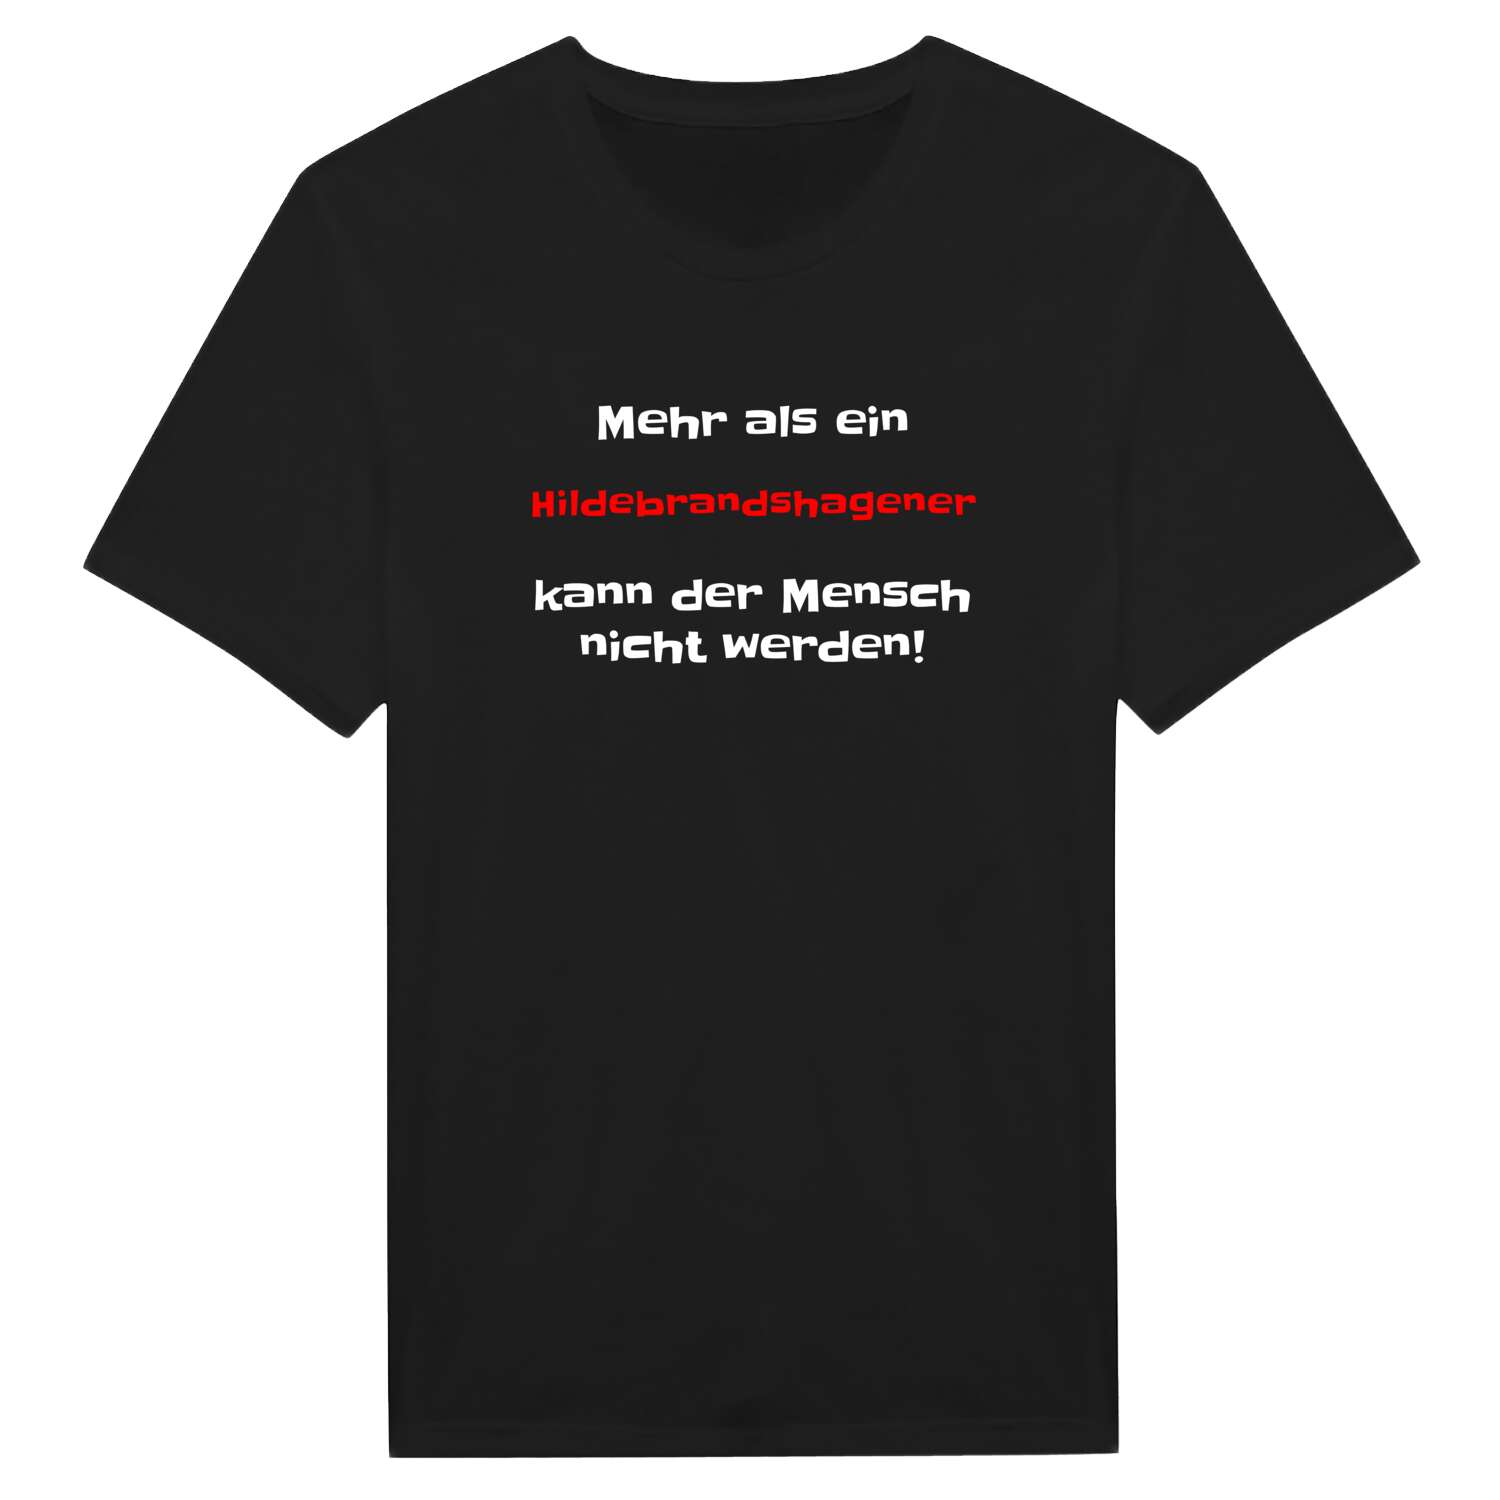 Hildebrandshagen T-Shirt »Mehr als ein«